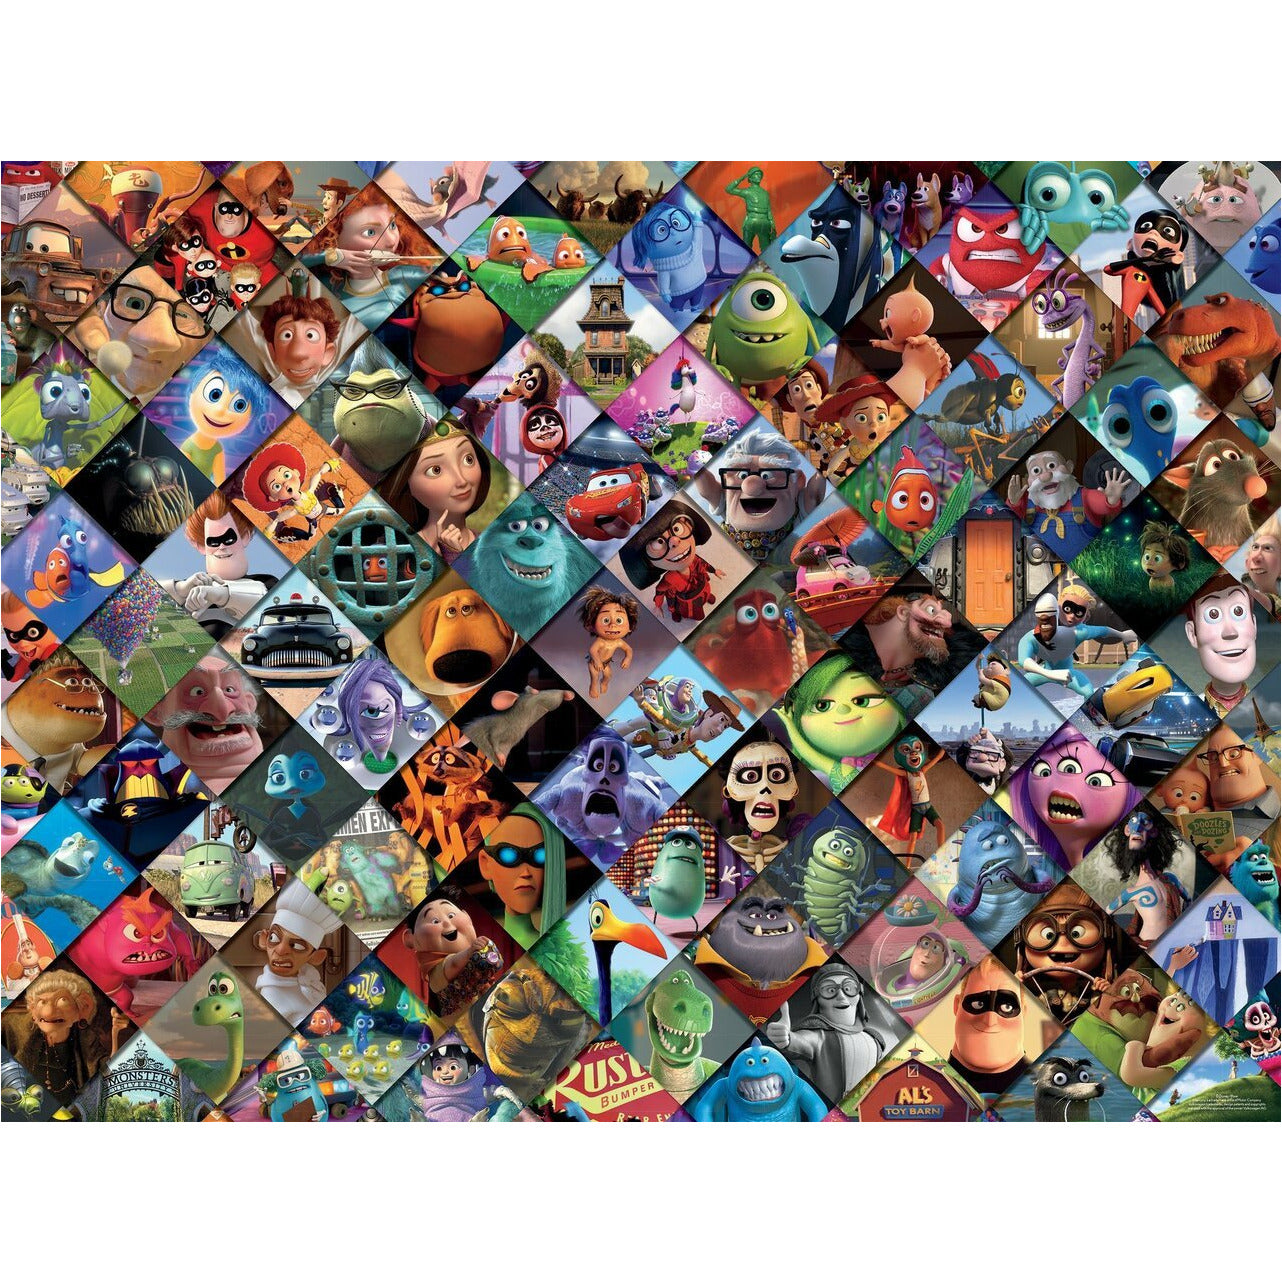 Ceaco Disney Pixar Movies - 300 Piece Puzzle - Over-sized Pieces